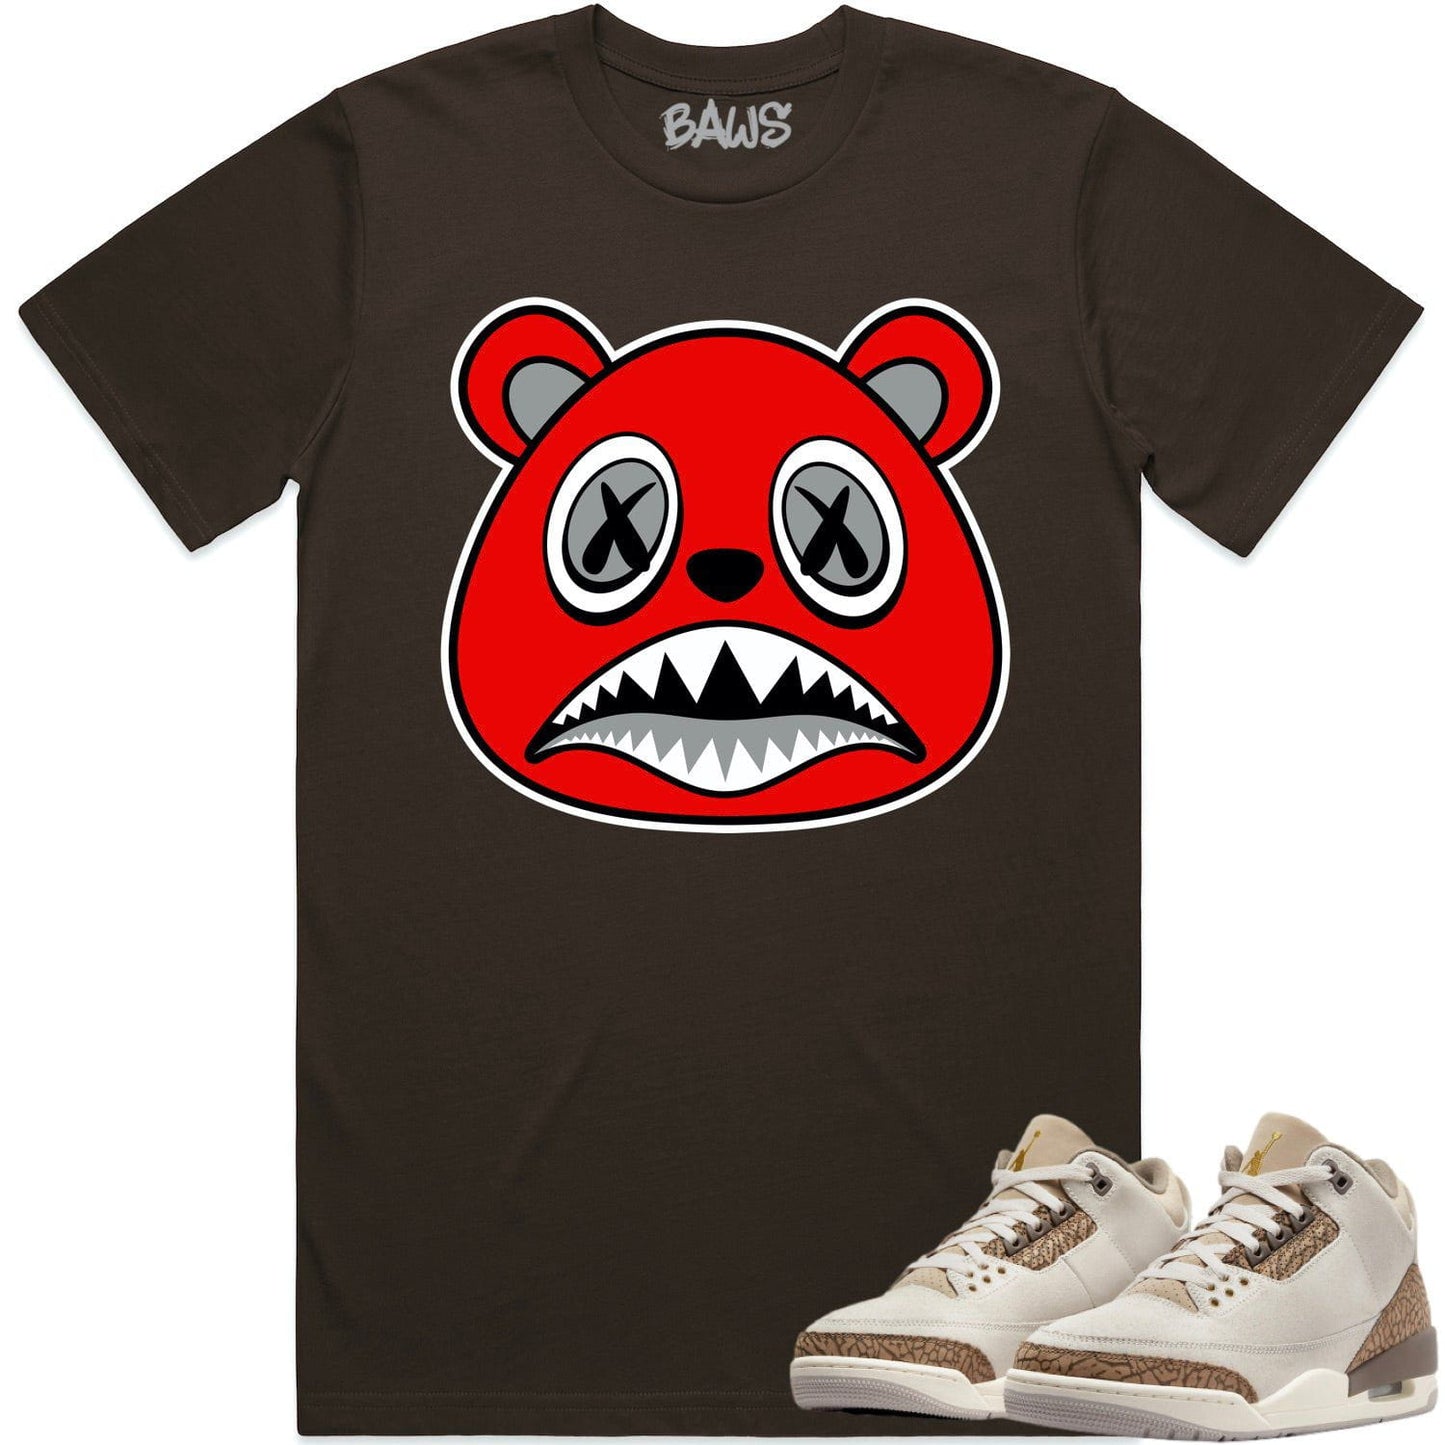 Palomino 3s Shirt - Jordan 3 Palomino Sneaker Tees - Angry Baws